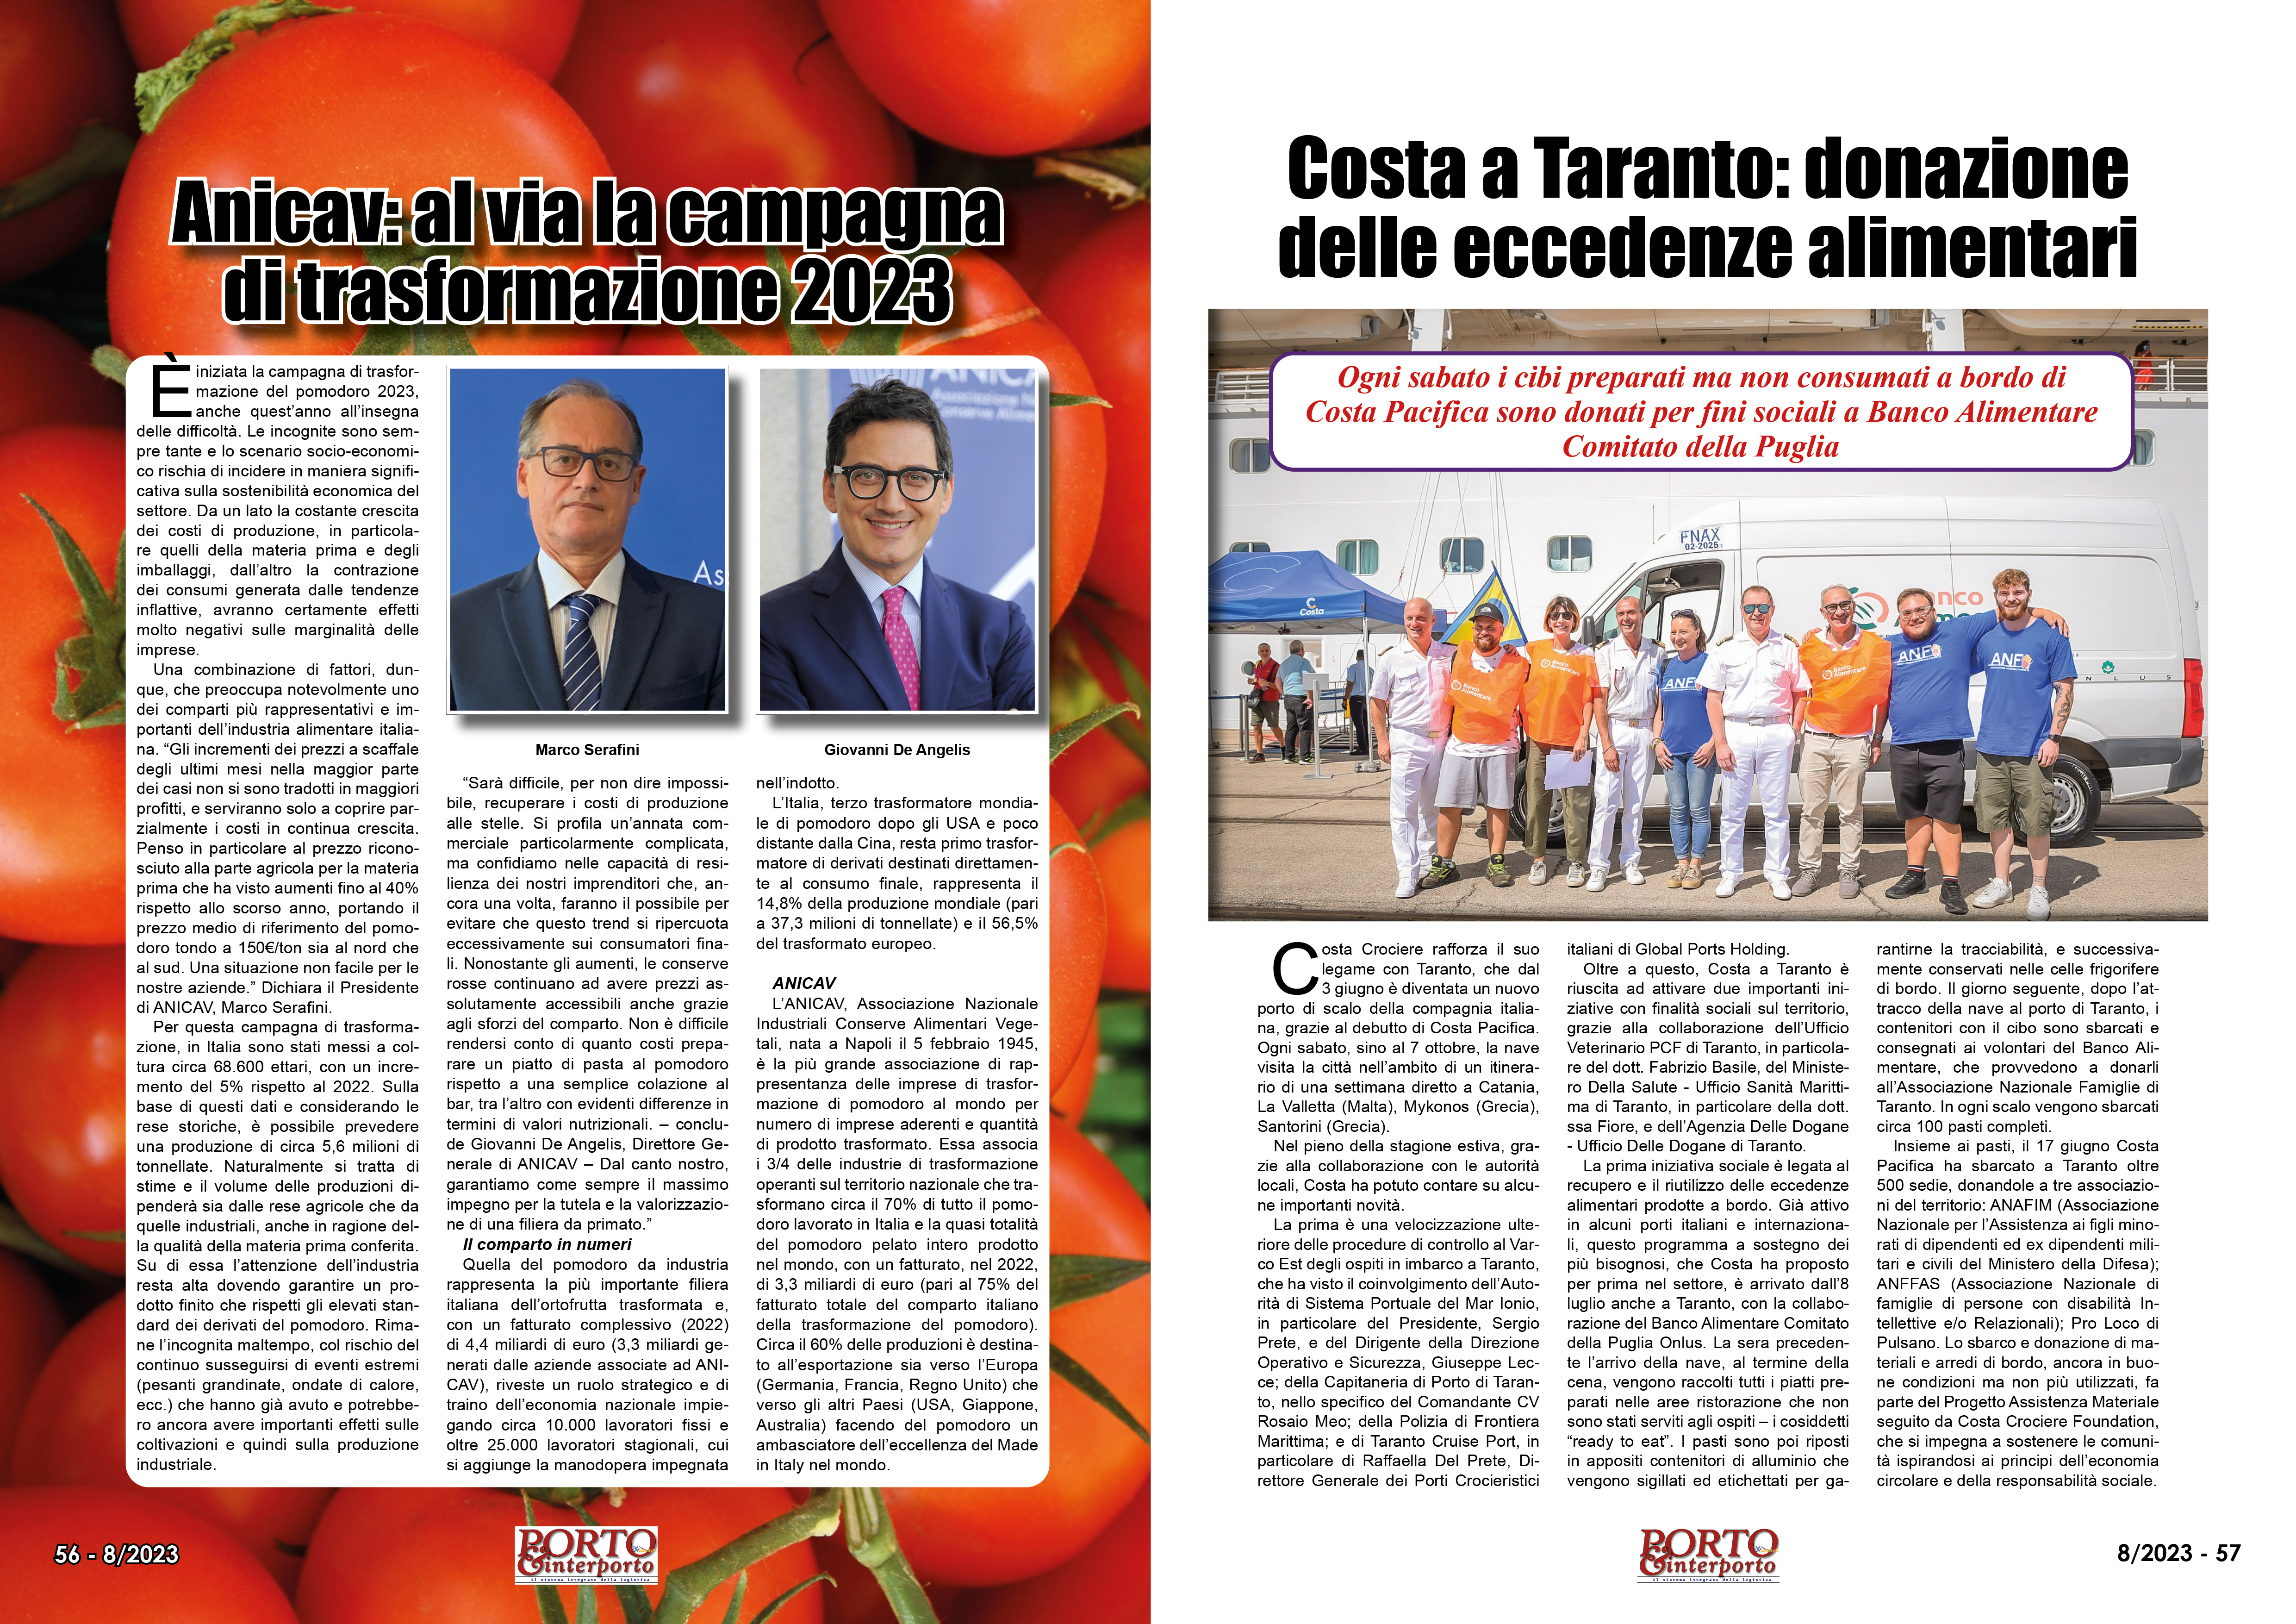 AGOSTO 2023 PAG. 57 - Costa a Taranto: donazione delle eccedenze alimentari